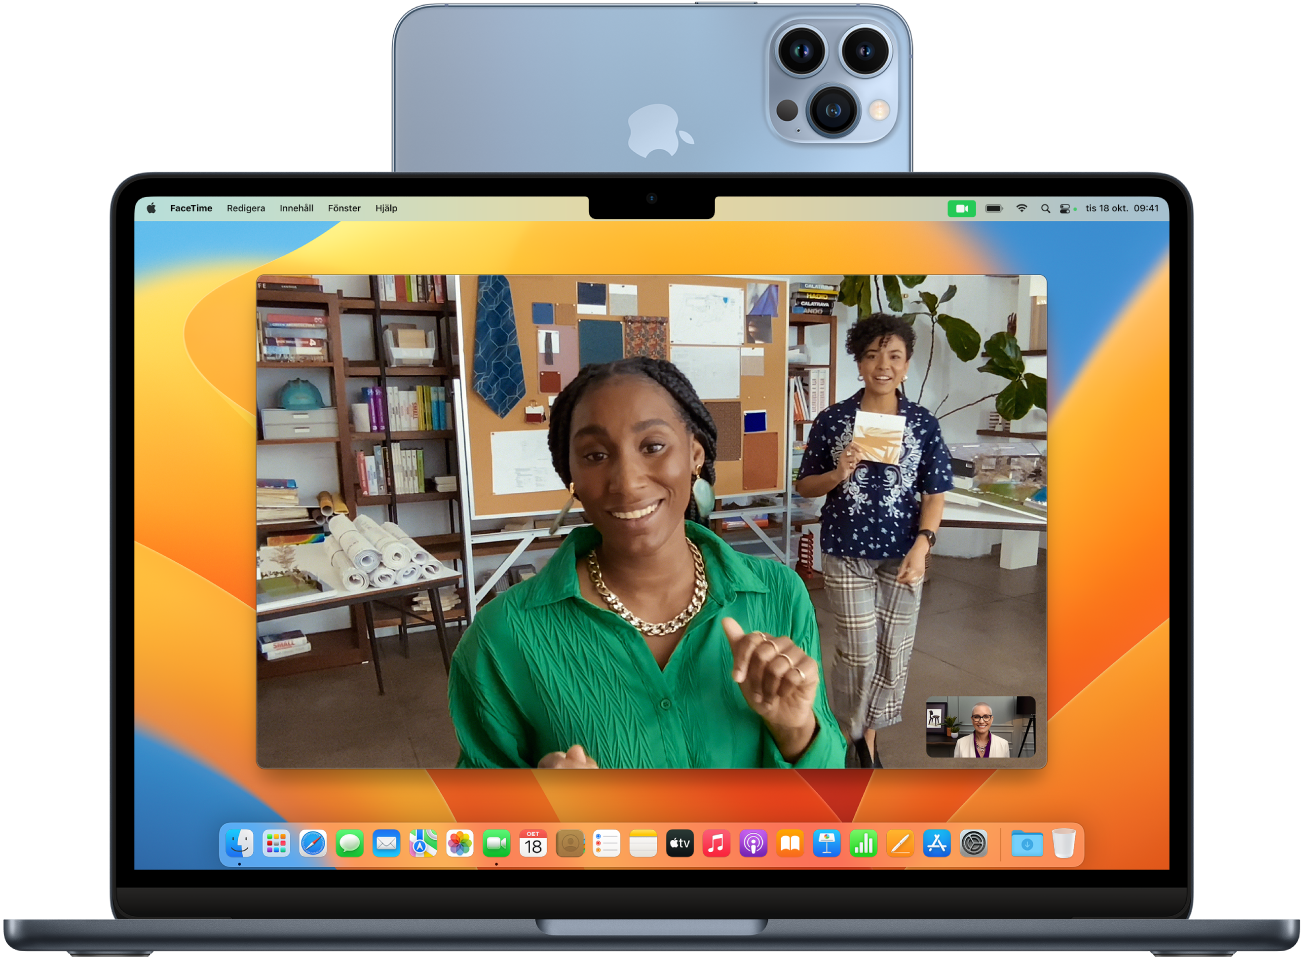 En Mac med en iPhone som används som en webbkamera är placerad ovanpå skärmen. Bilden från iPhones kamera syns på datorskärmen.